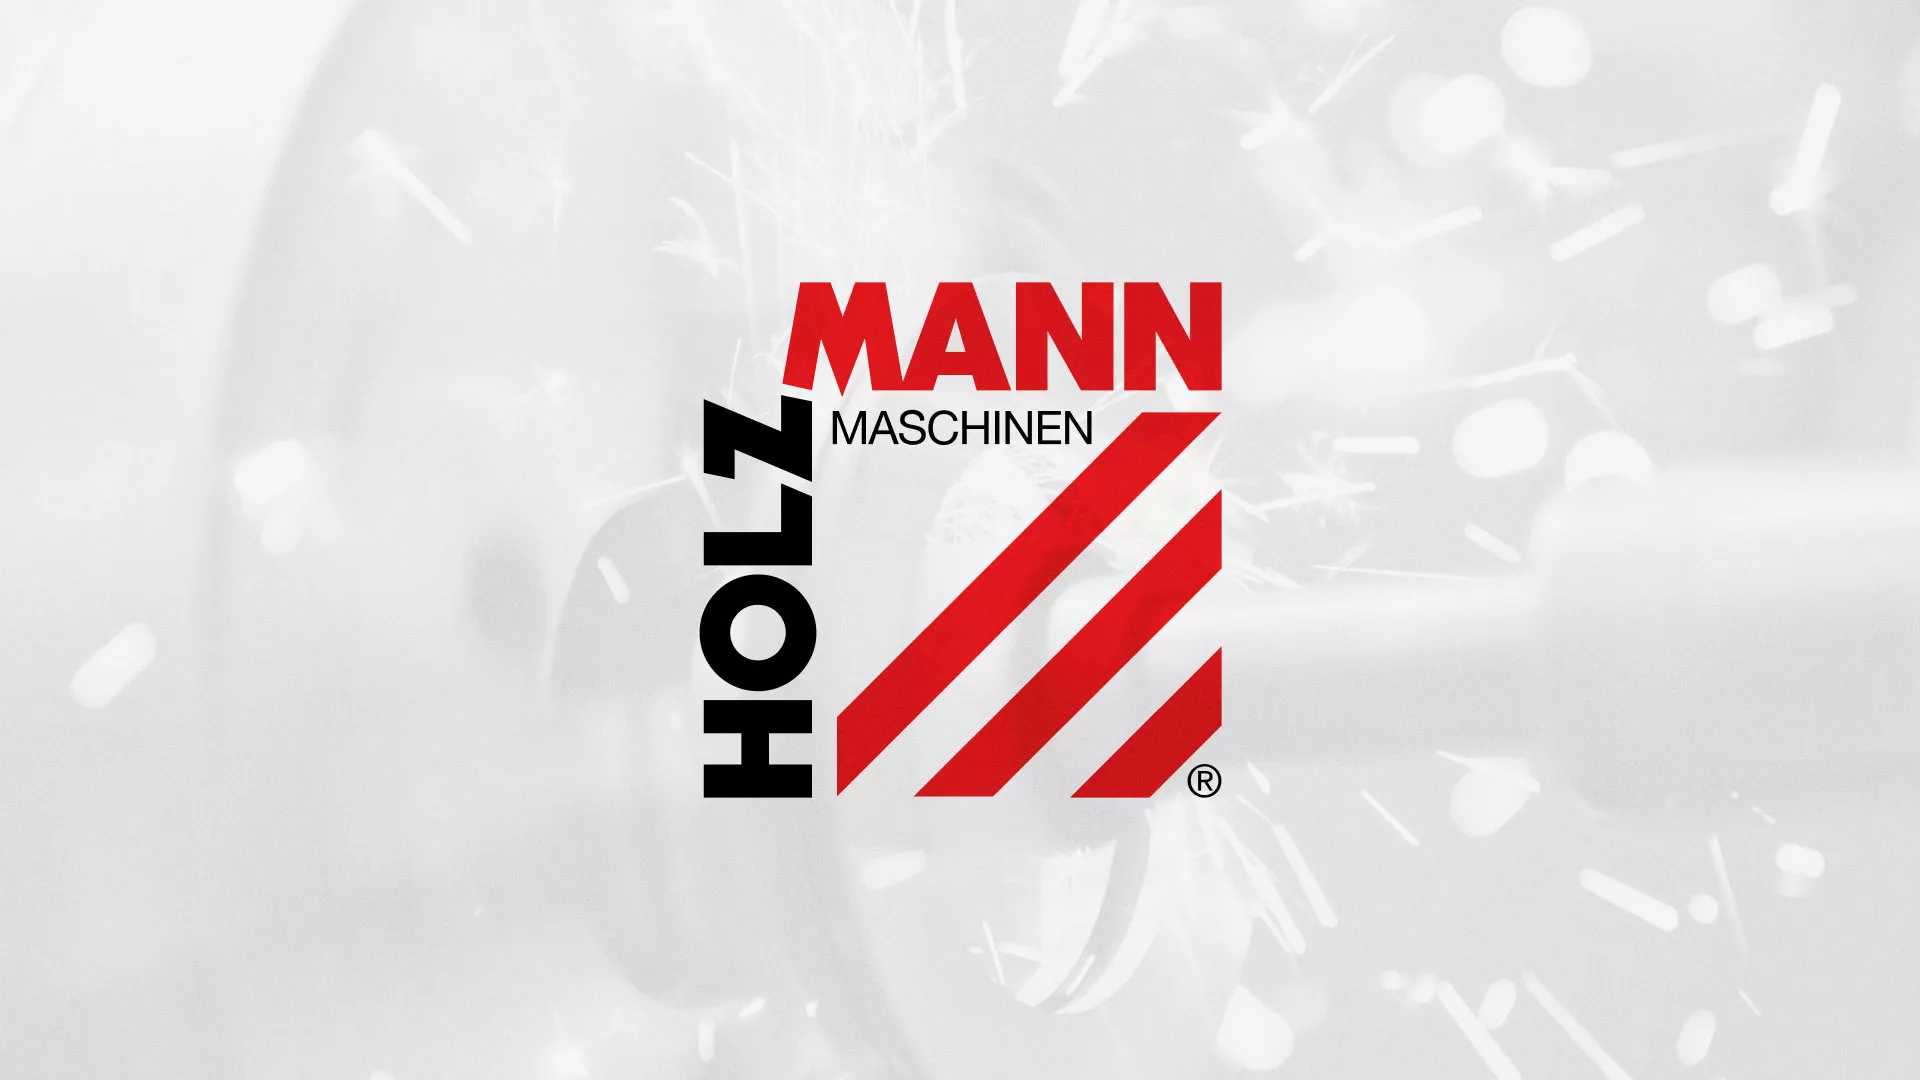 Создание сайта компании «HOLZMANN Maschinen GmbH» в Шлиссельбурге